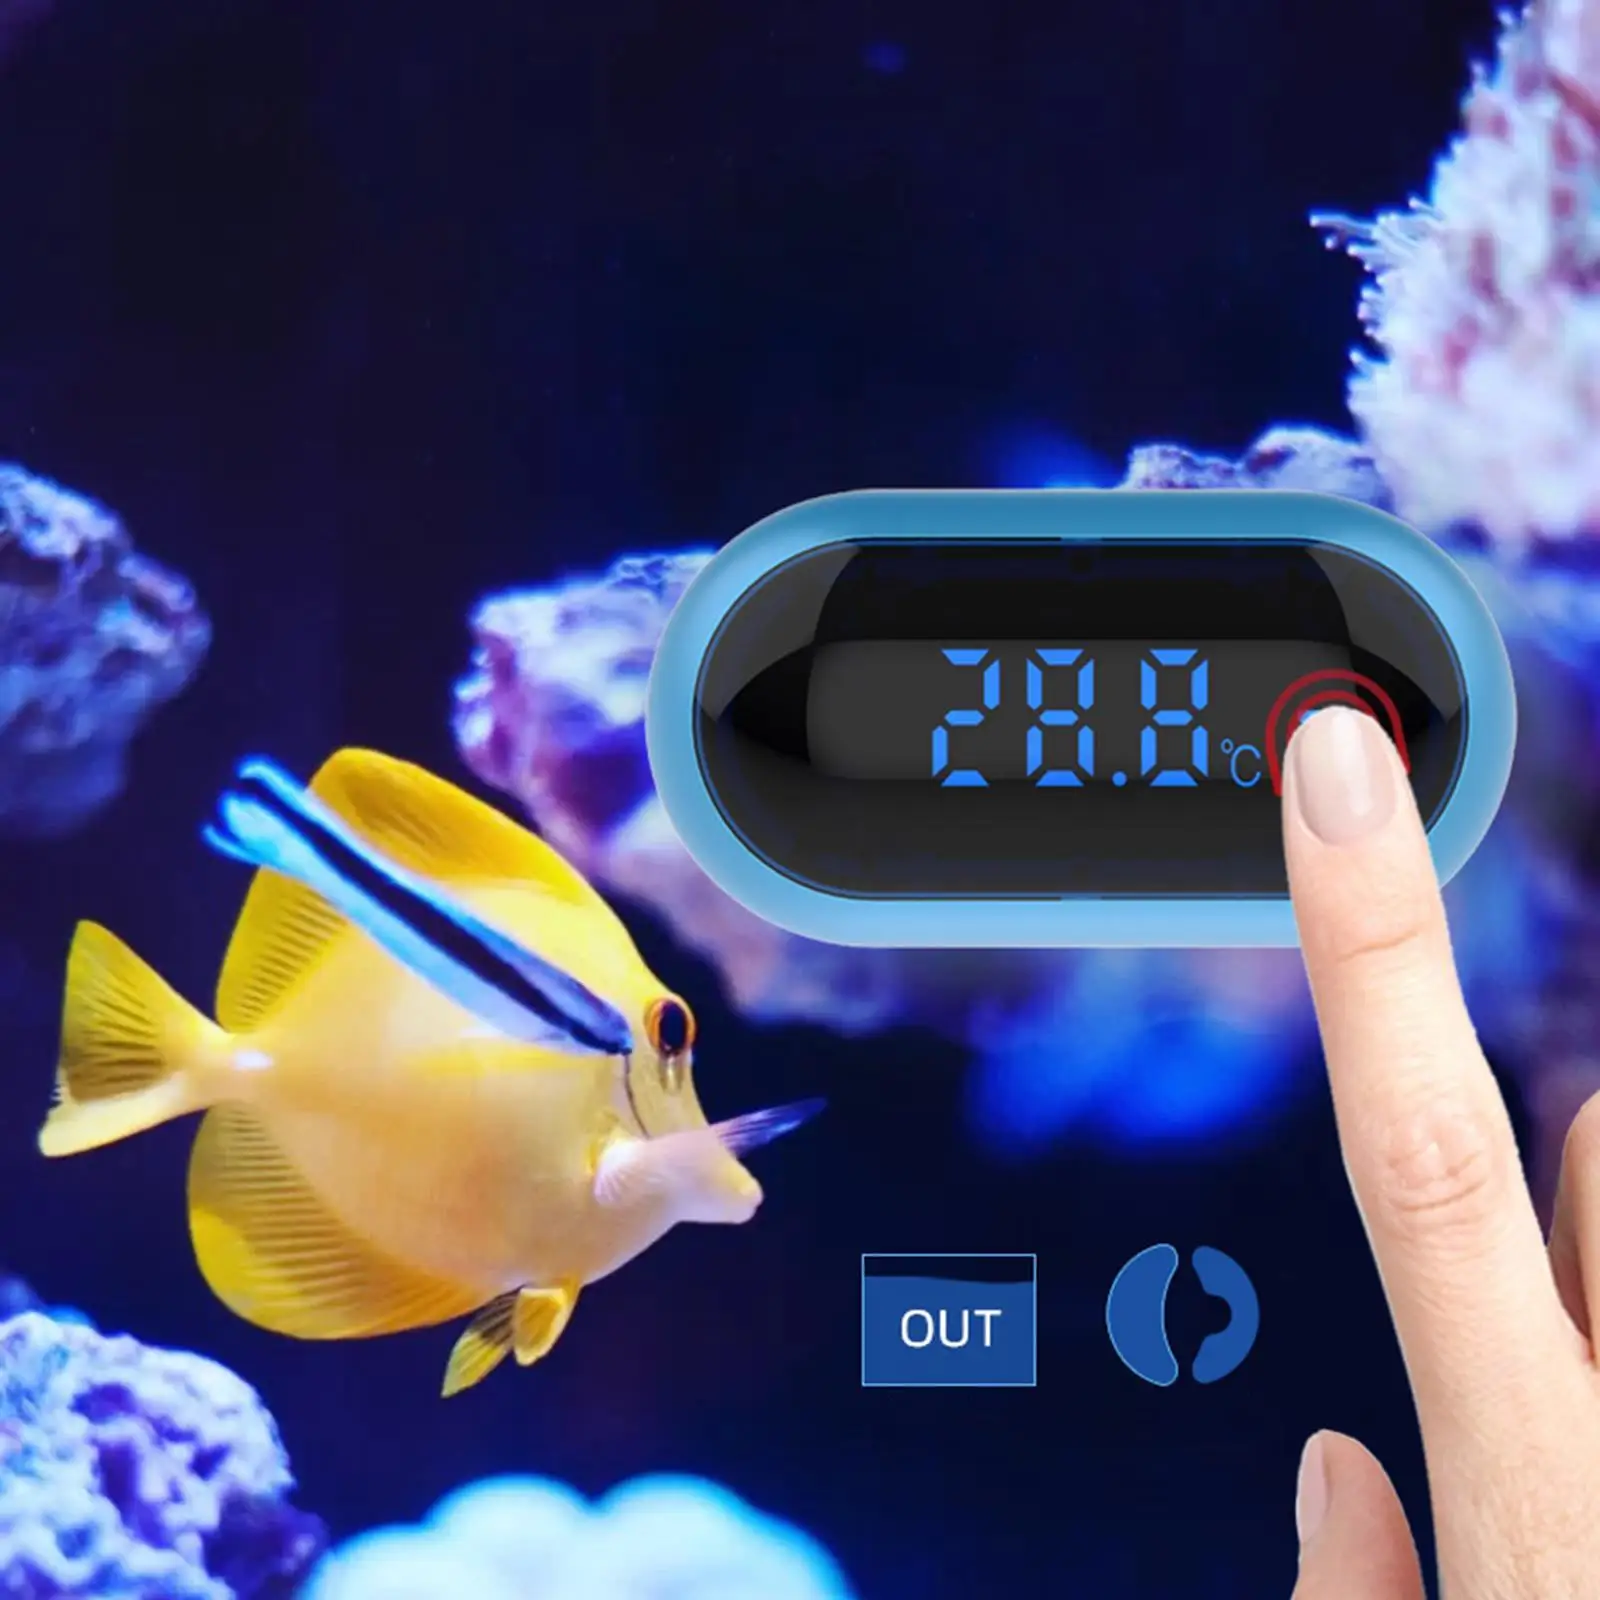 Aquarium  Digital Fish Tank  with LED Display Stick  Terrarium Temperature Sensor  for  Turtle Amphibians